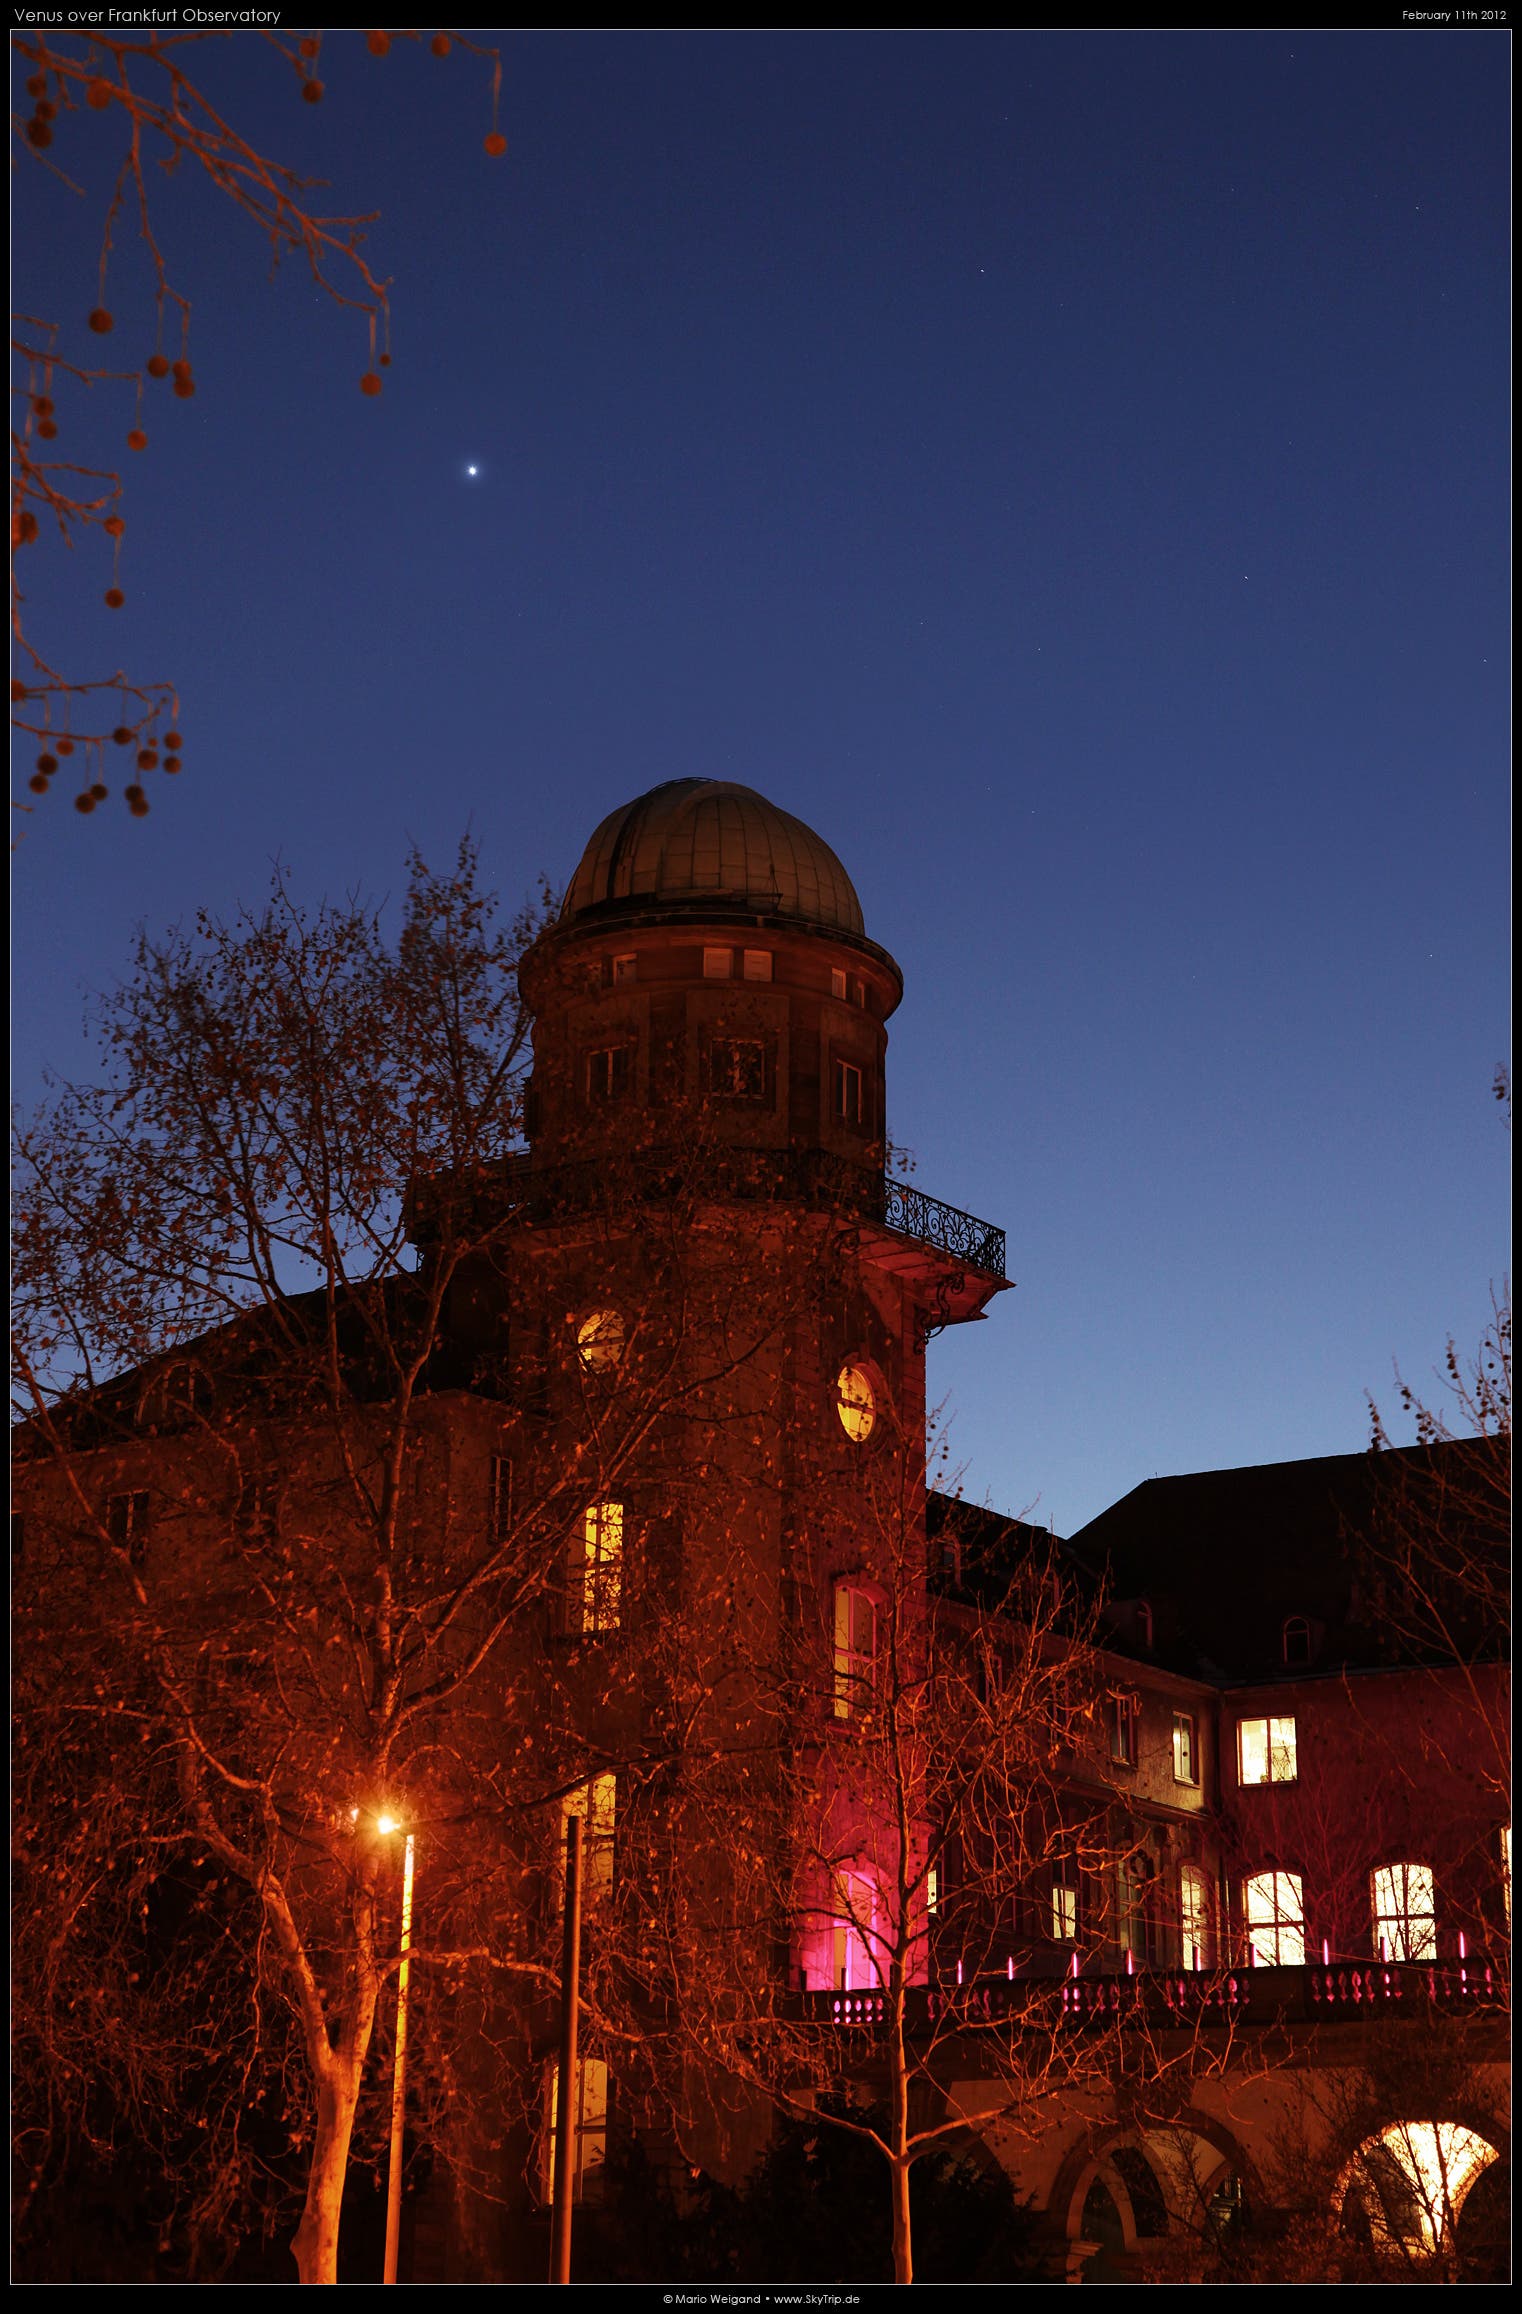 Venus und die Sternwarte Frankfurt